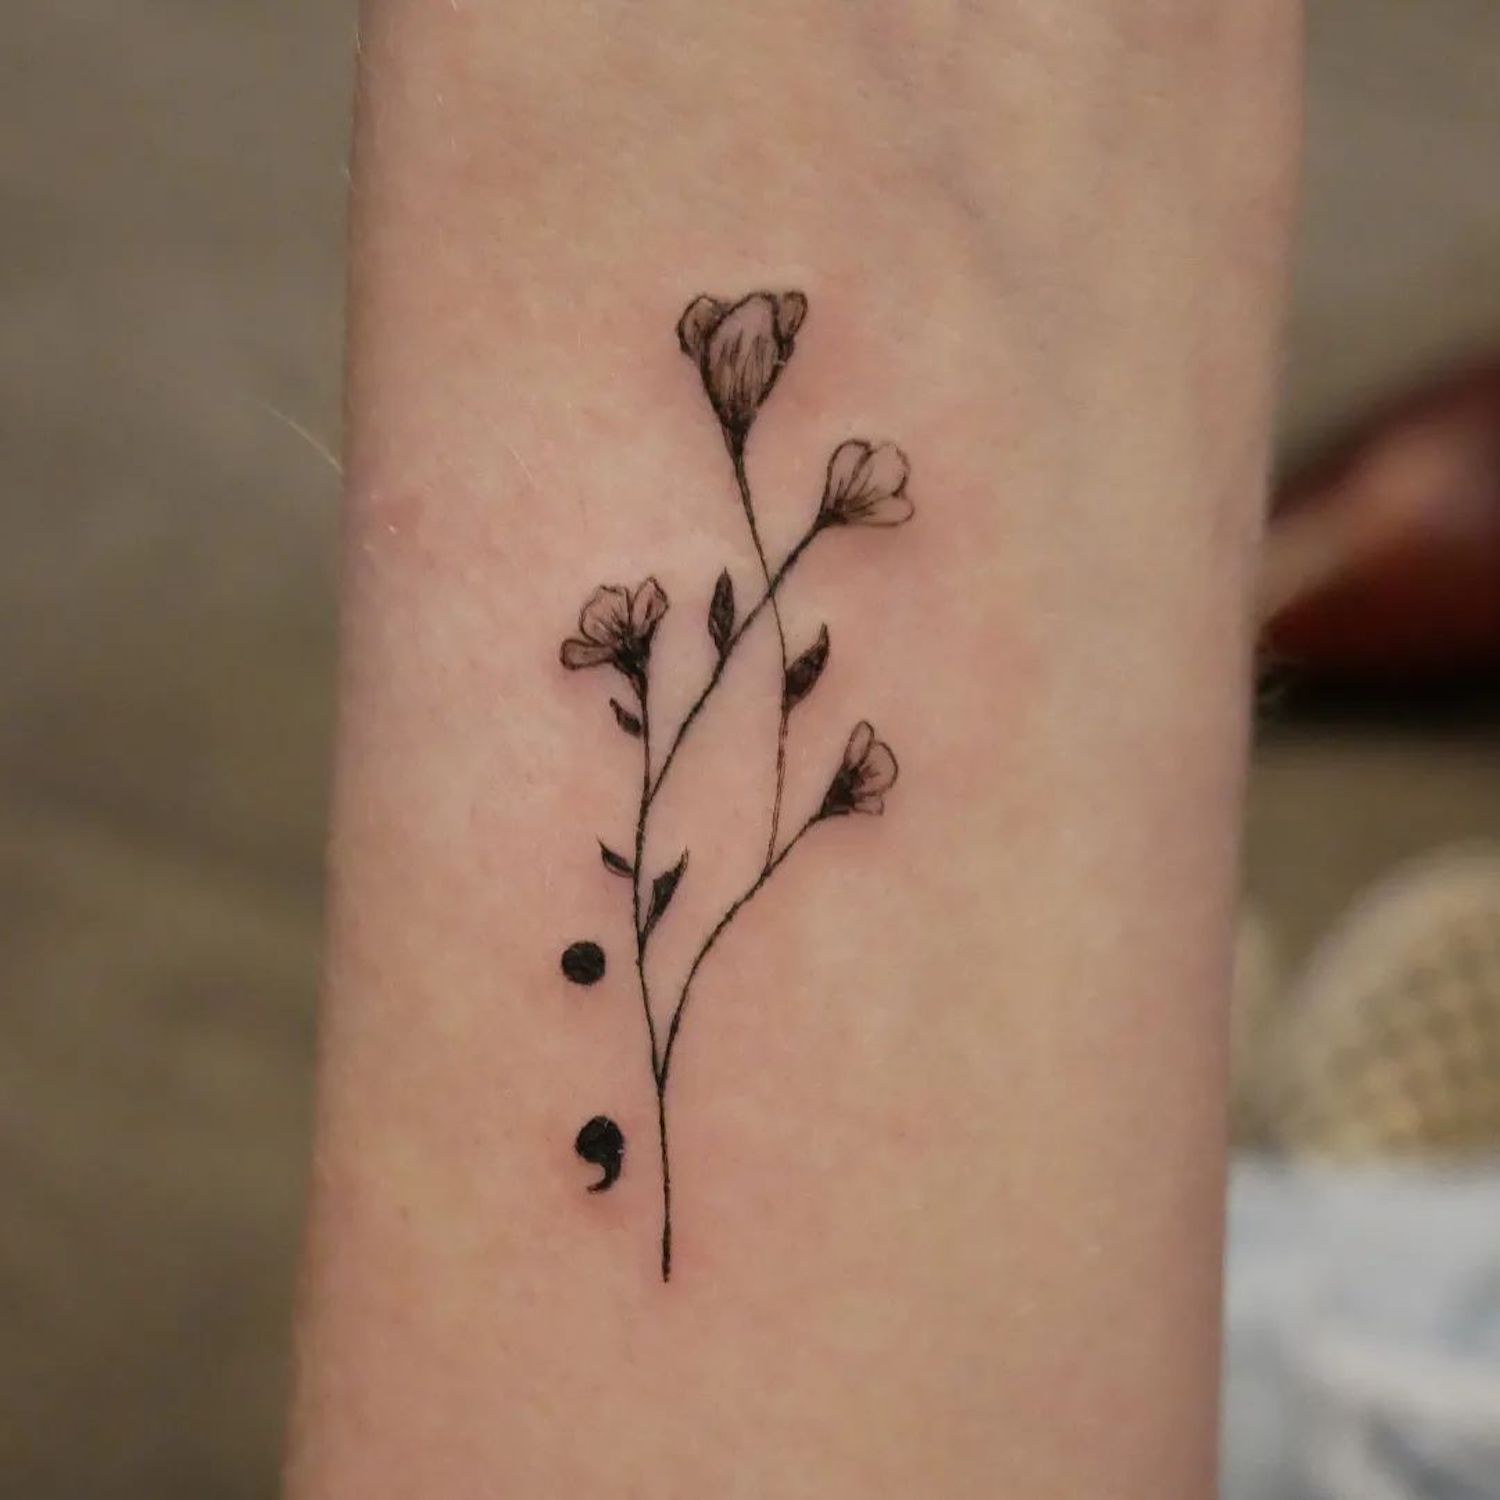 Tatuagem na forma de um ramo de flores representando um ponto de uma vírgula